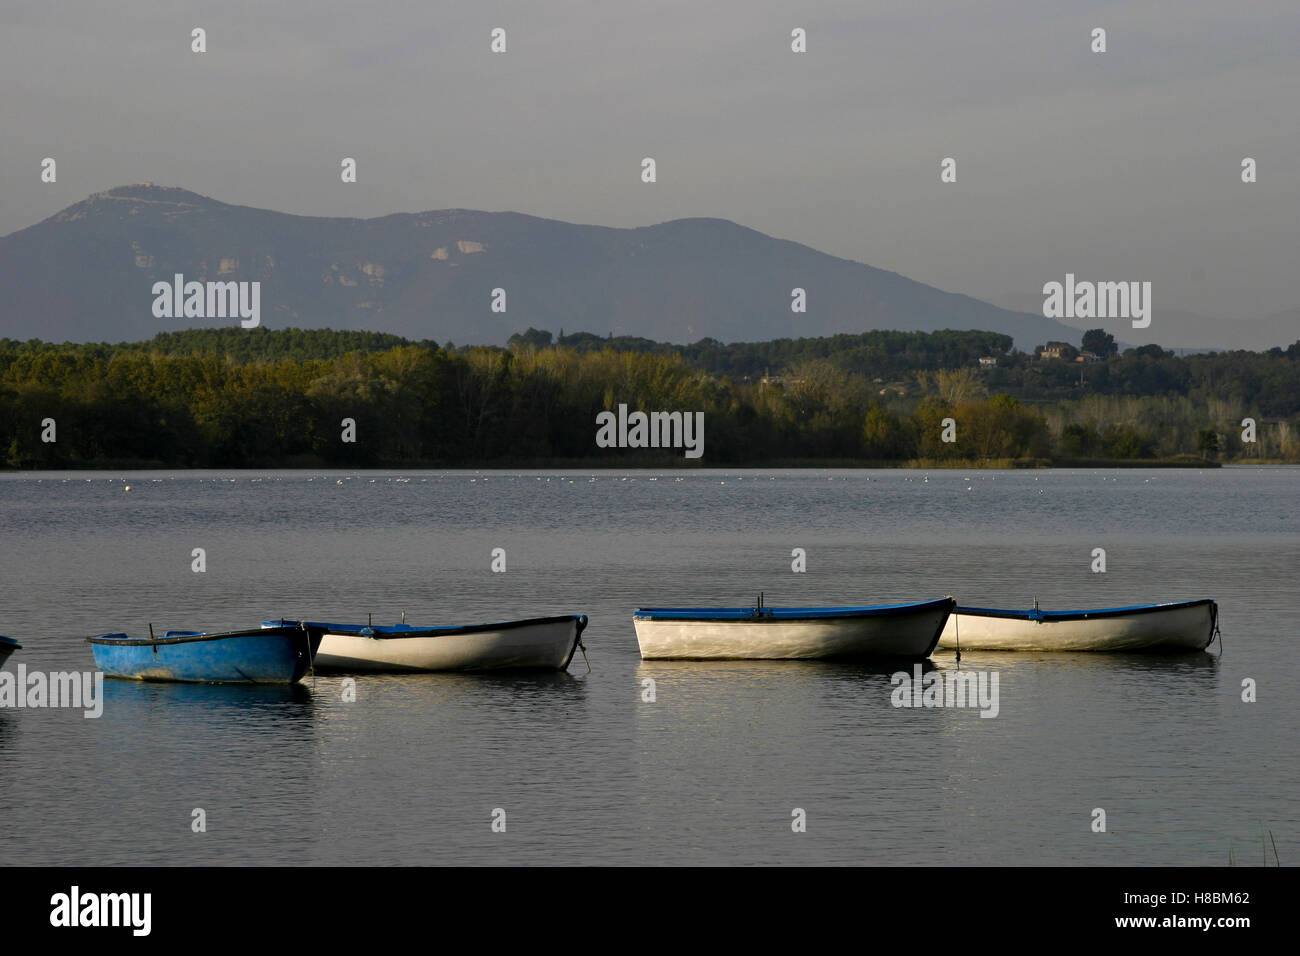 Estany de Banyoles, Lake of Banyoles, Girona, Cataonia, Spain Stock Photo